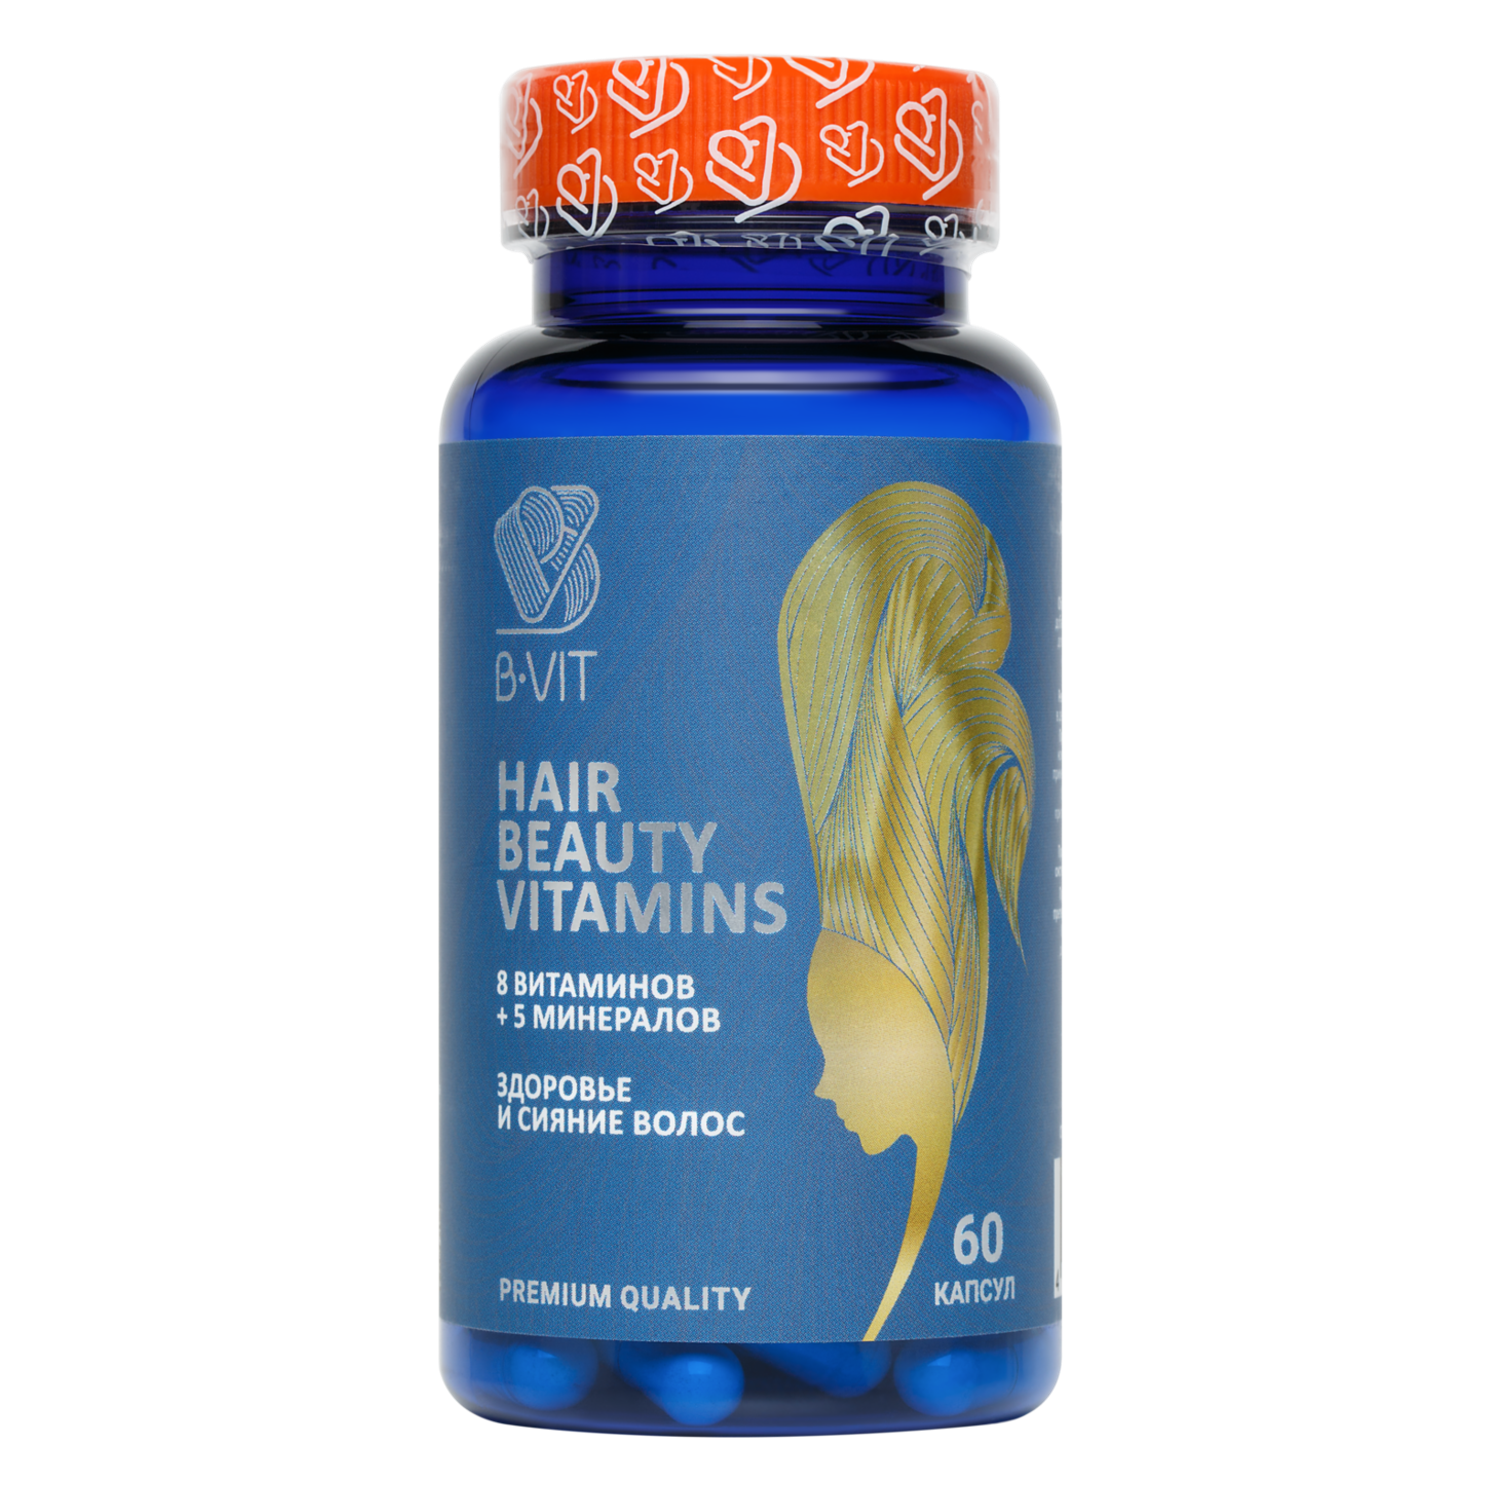 Биологически активная добавка B-VIT Витамины для красоты волос 60 капсул - фото 1